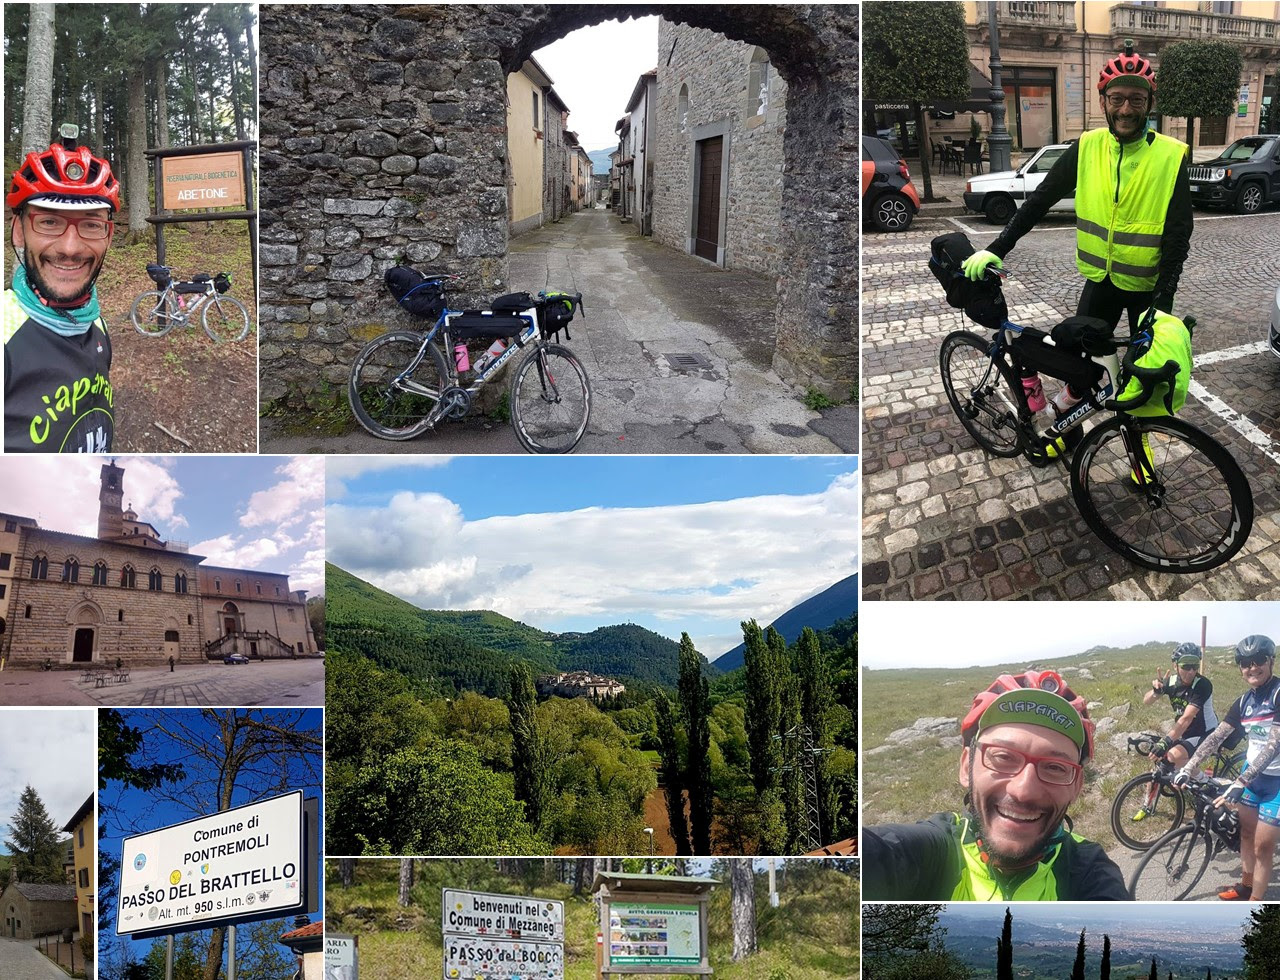 Bici e cicloturismo, pubblicate le date dell'Italy Bike Tour 2021 di Oceanus